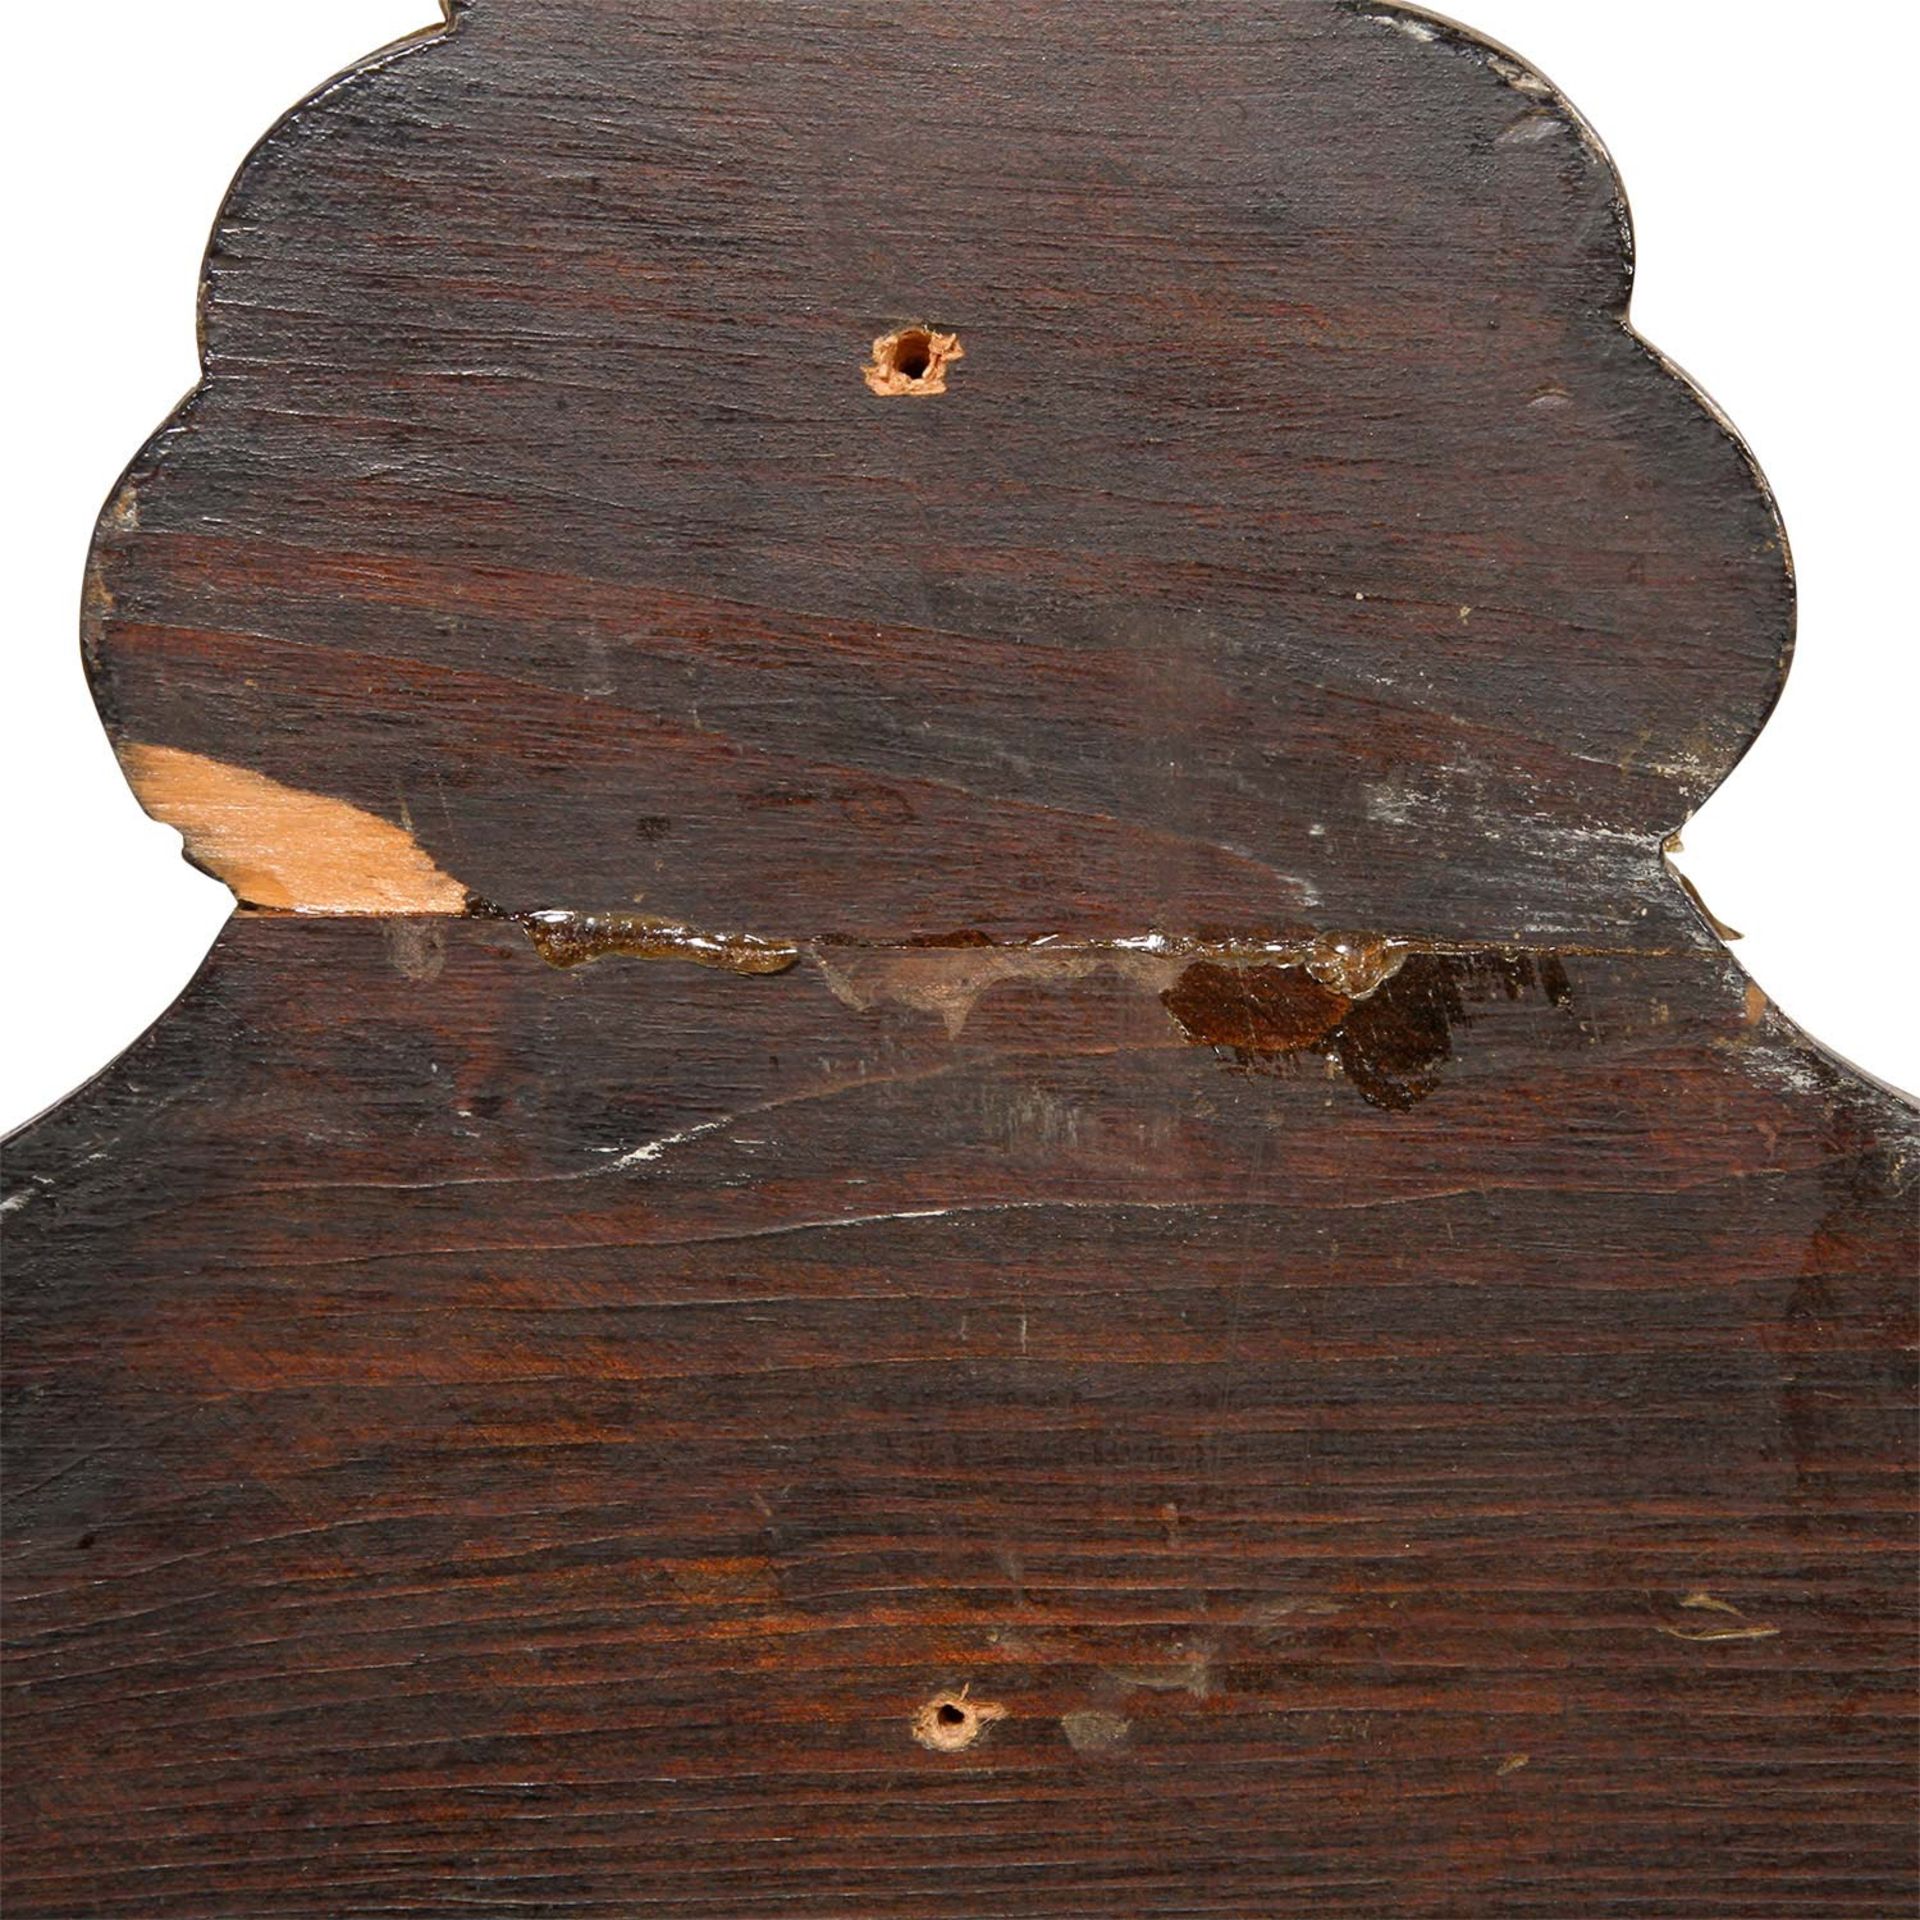 SUPRAPORTE Ende 19. Jhd., aus Holz geschnitzt, durchbrochen gearbeitet, mit Blattwerk und - Bild 3 aus 3